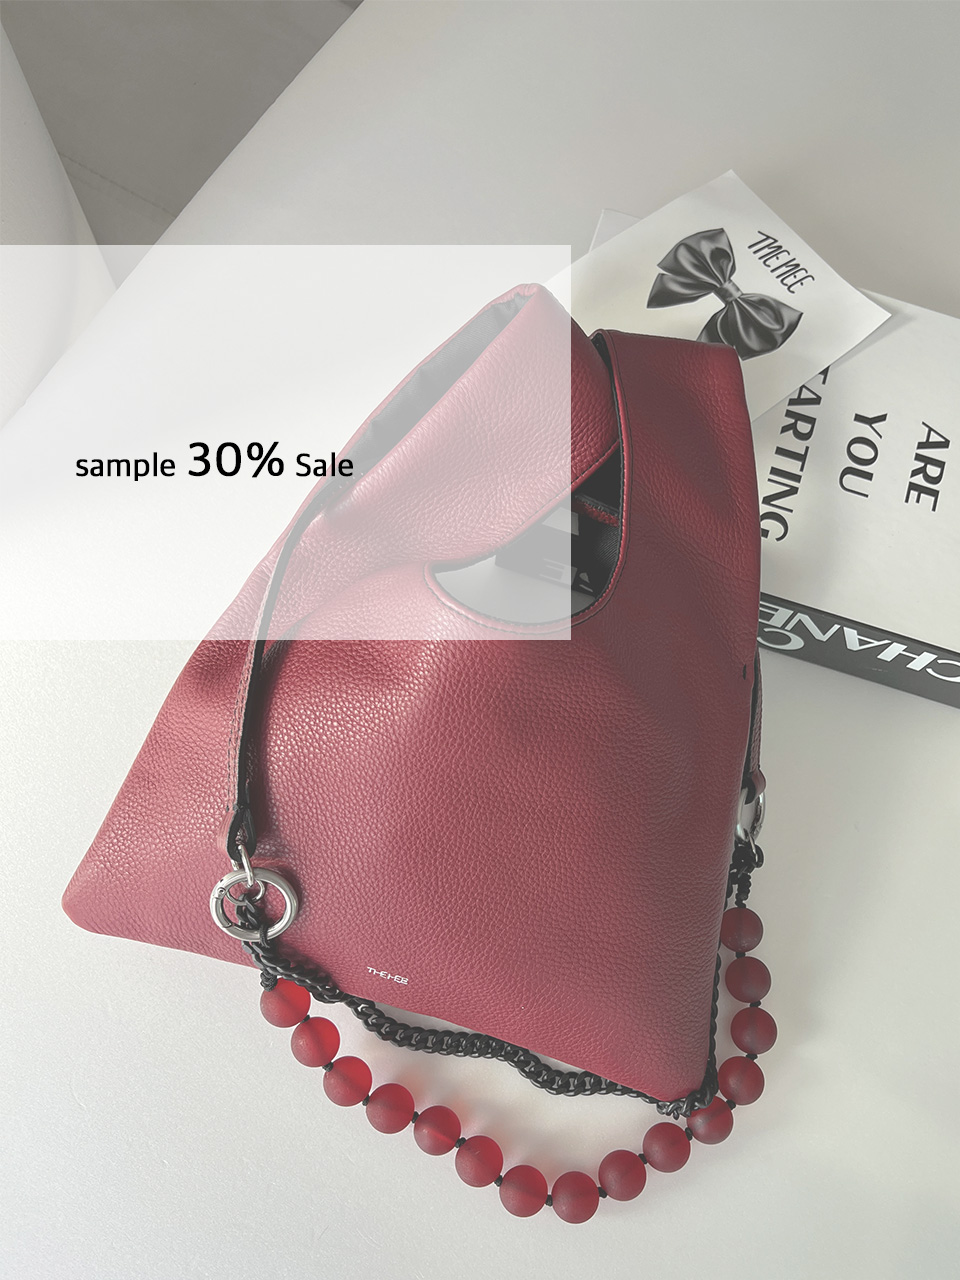 sample 30%Sale  레드 가죽 미니토트백+3way숄더끈